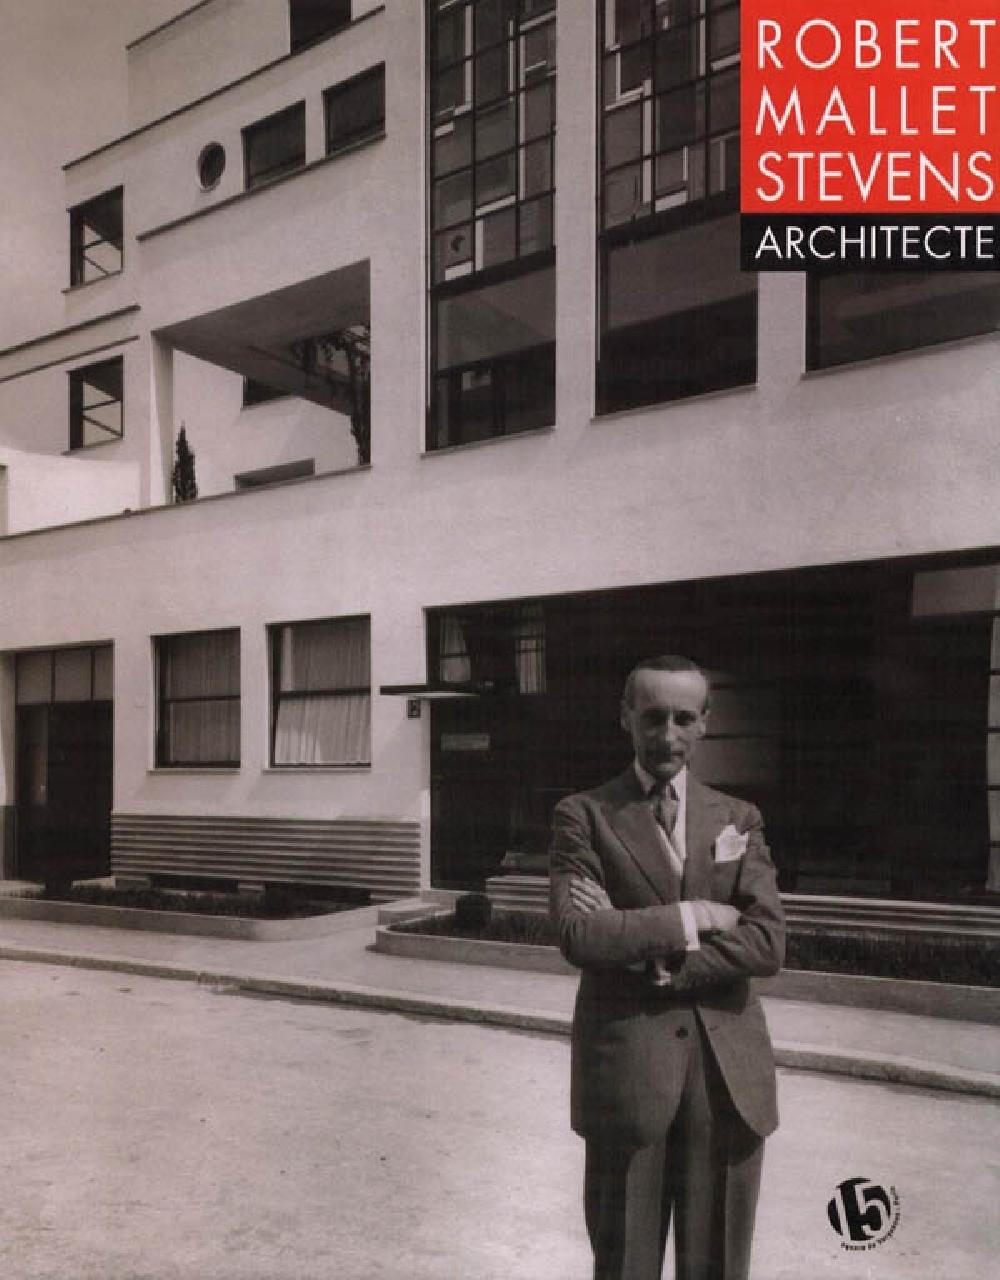 Robert Mallet-Stevens architecte